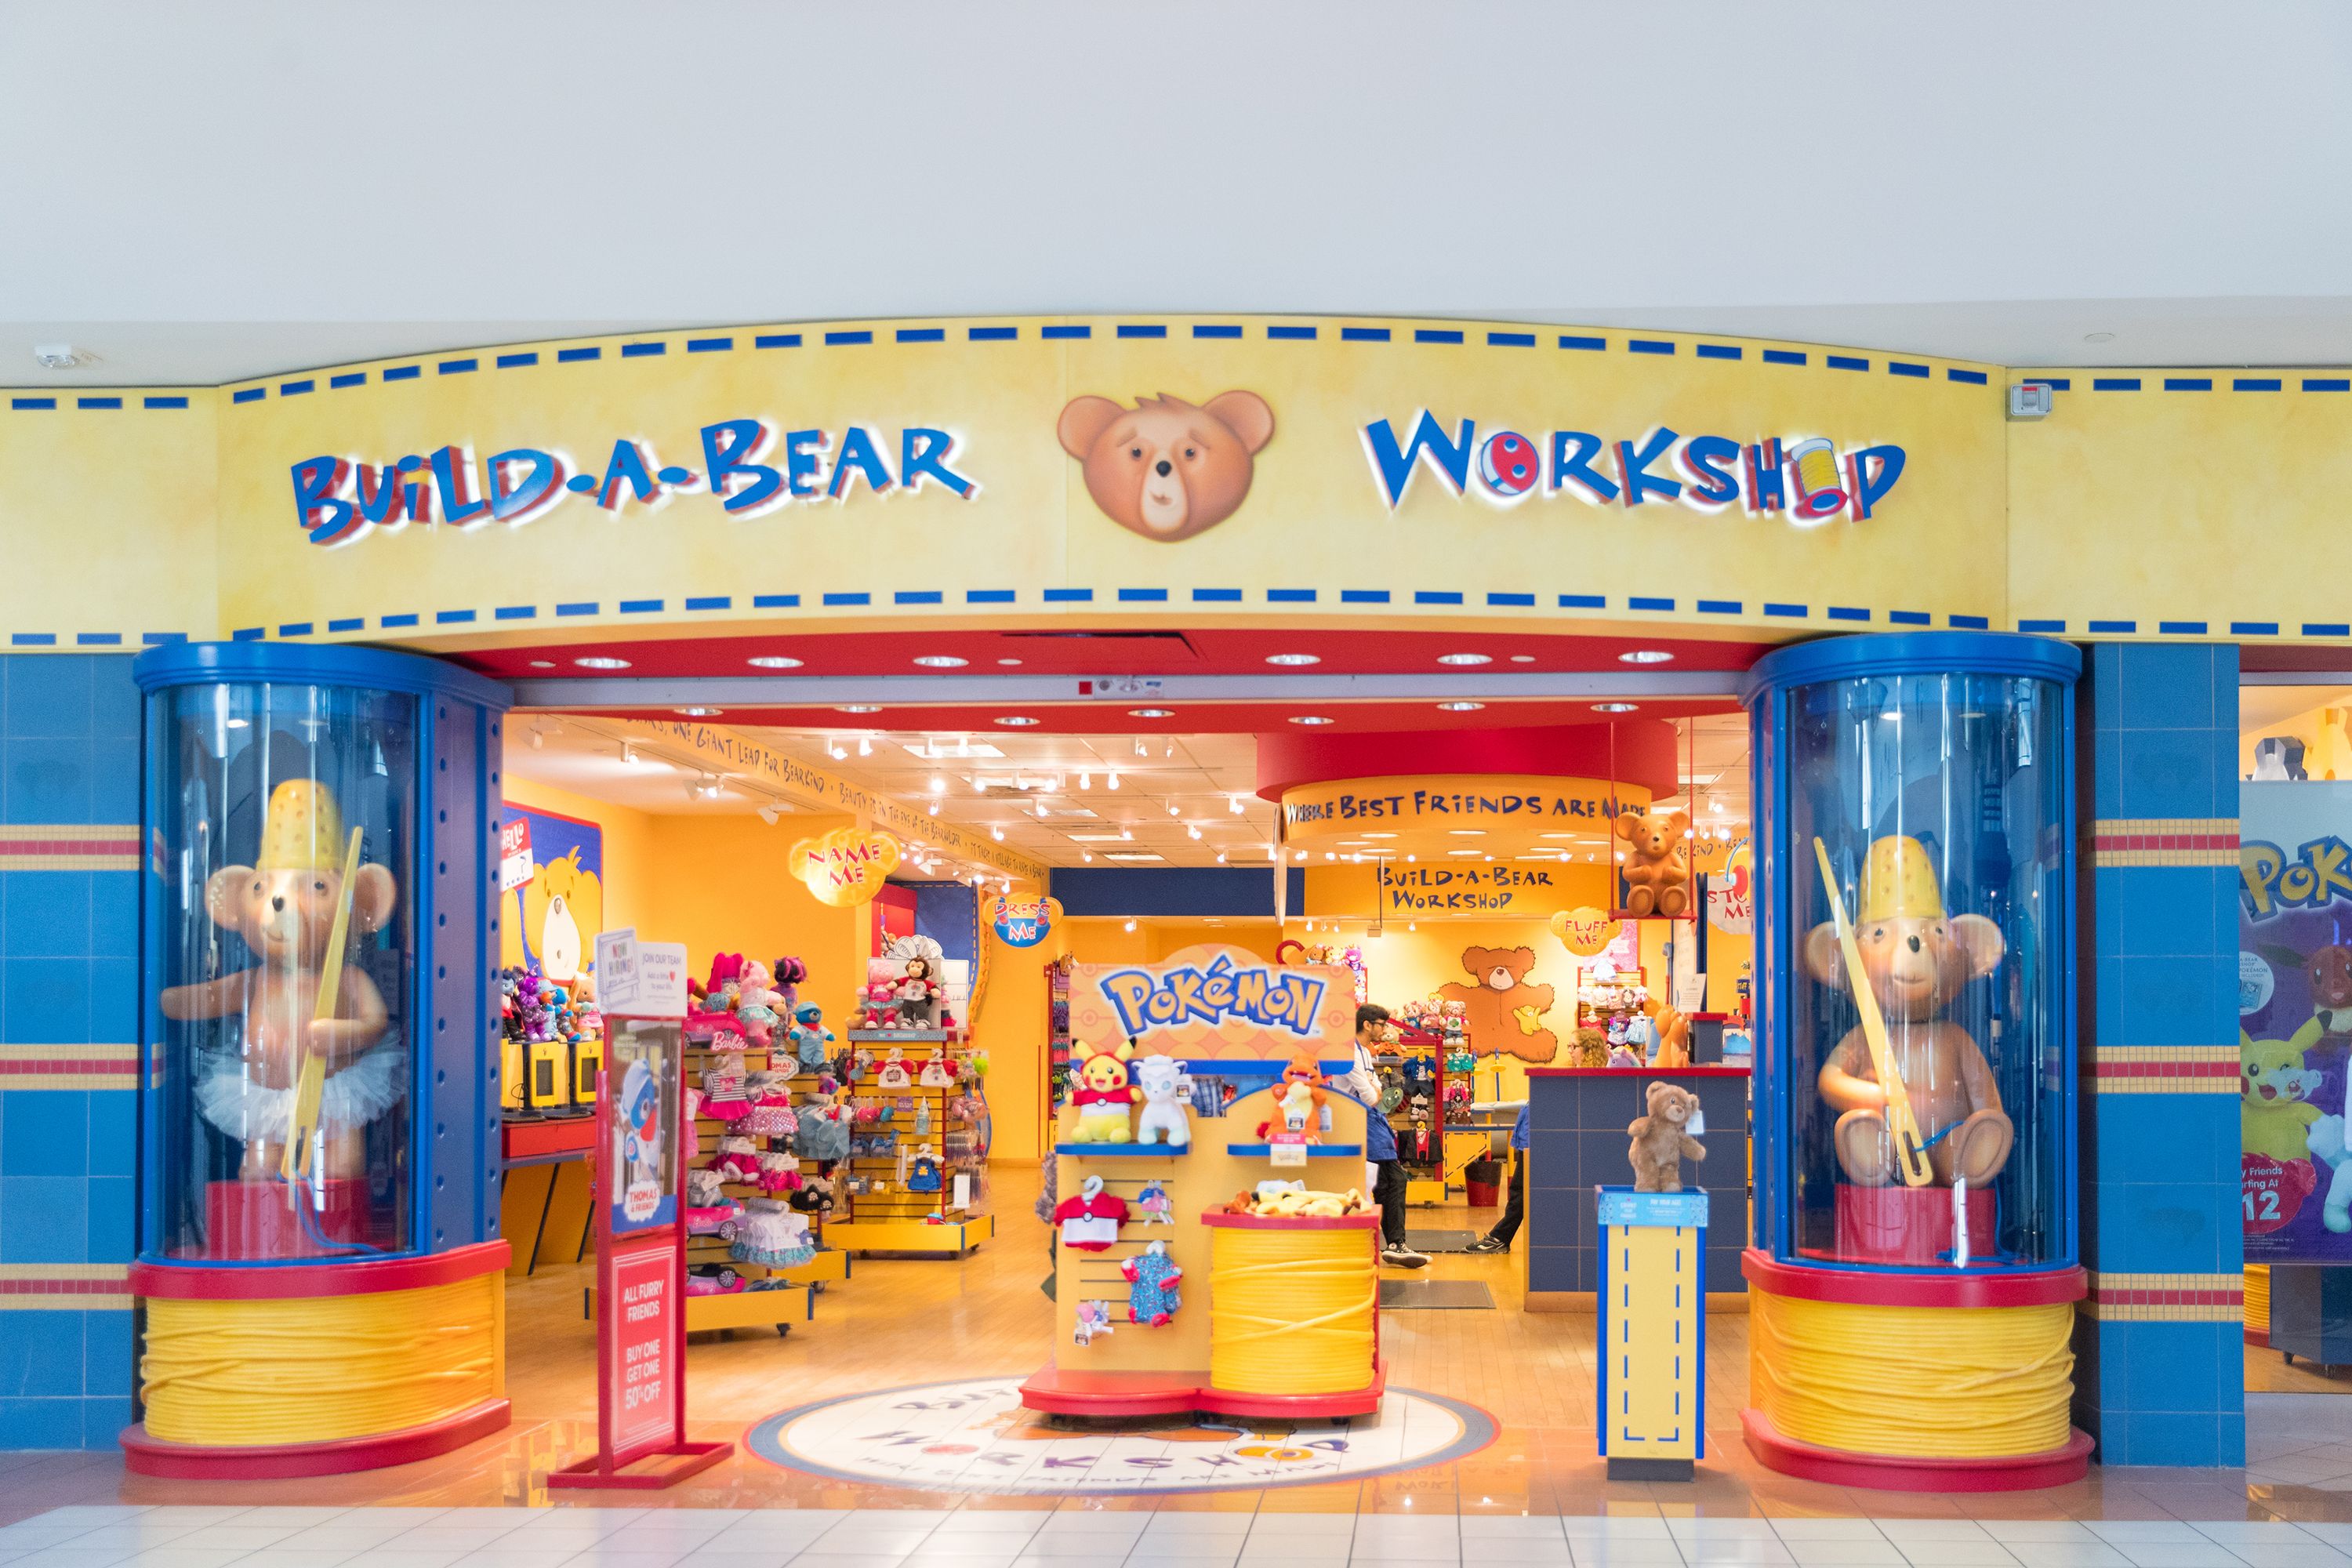 build a teddy bear store